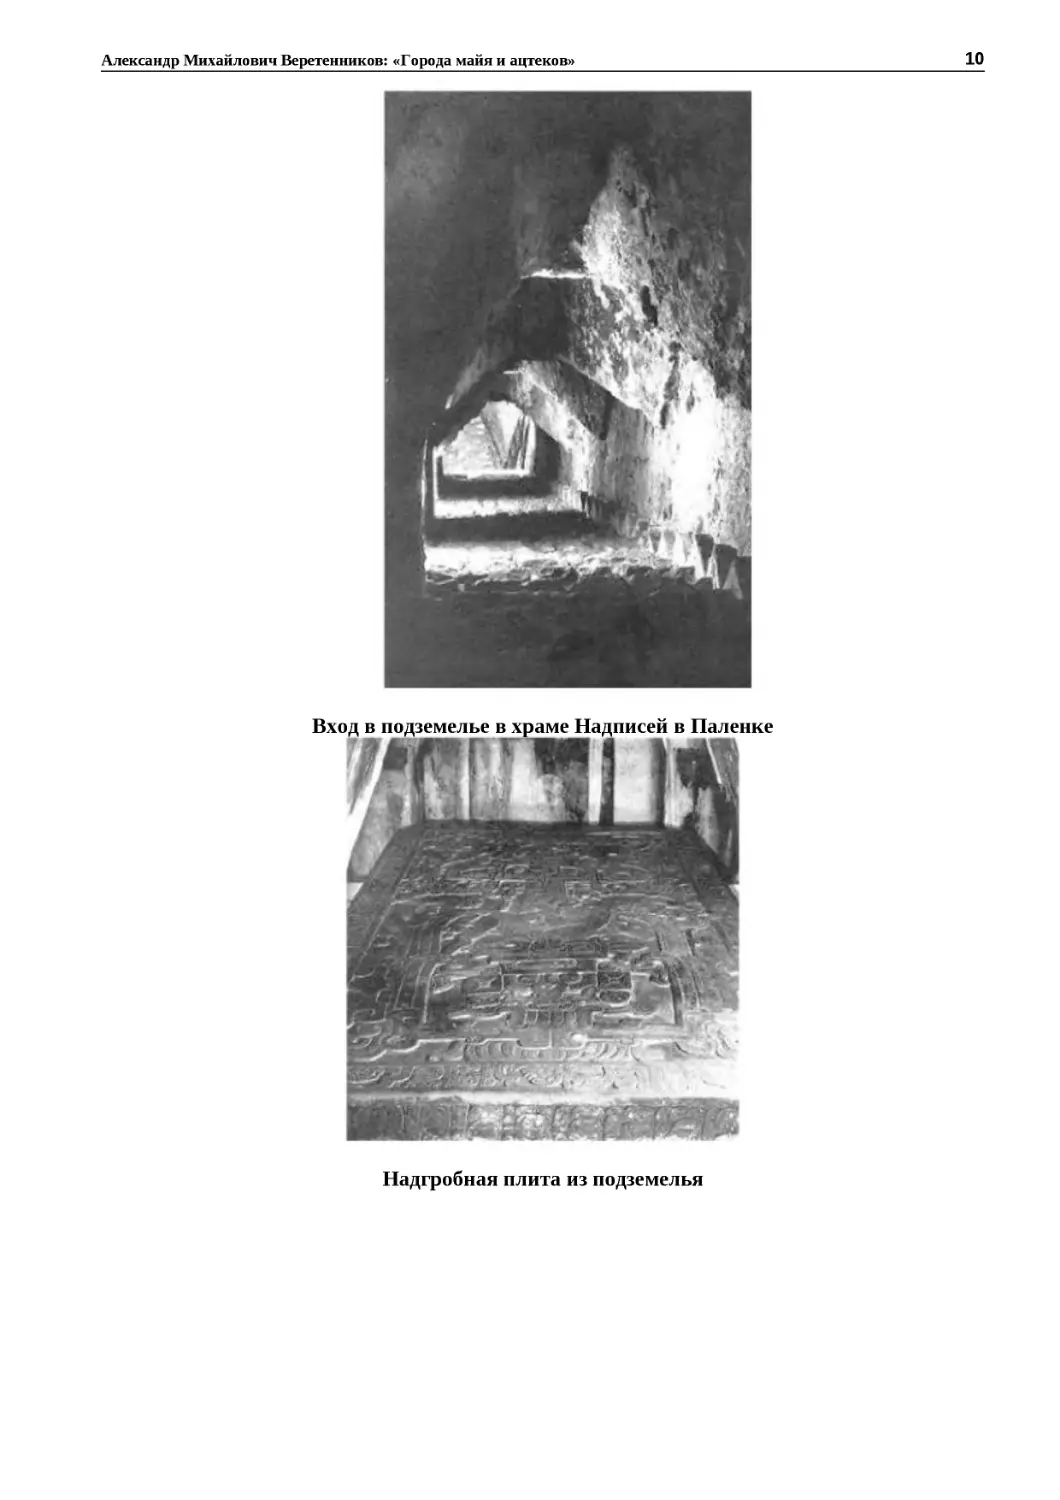 ﻿Вход в подземелье в храме Надписей в Паленк
"
﻿Надгробная плита из подземель